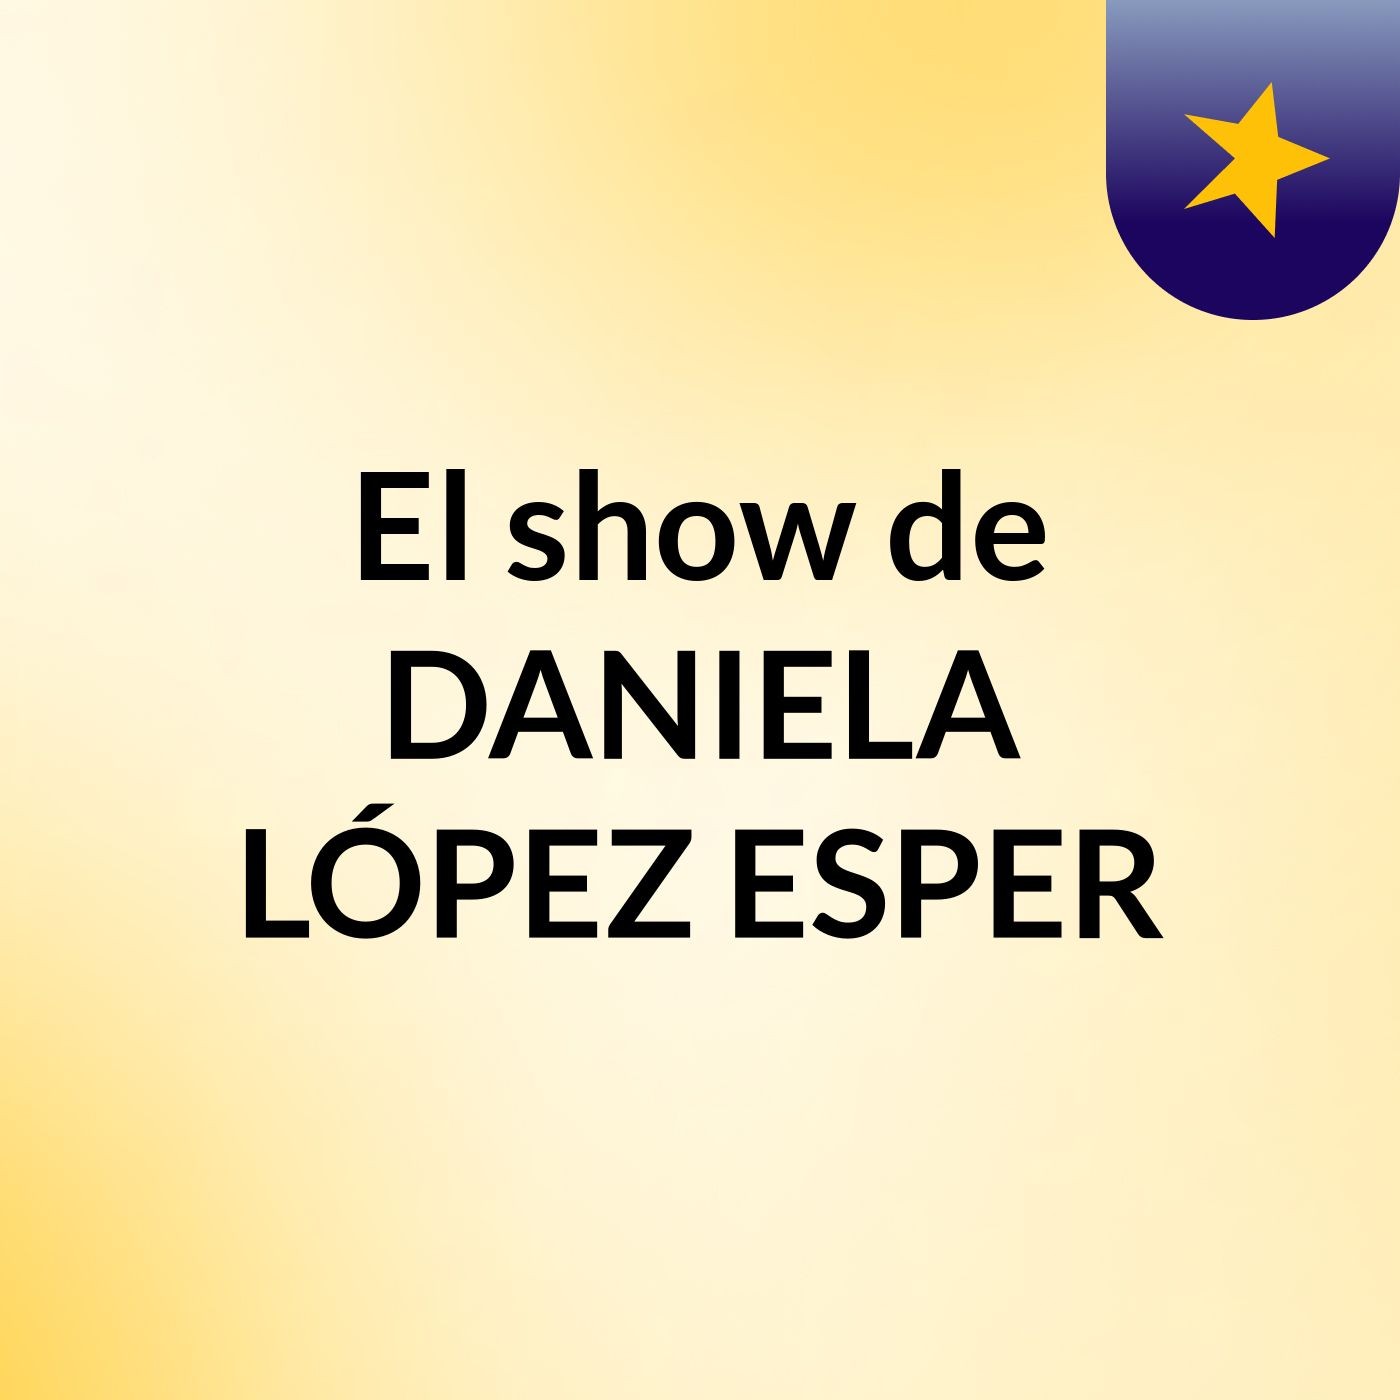 El show de DANIELA LÓPEZ ESPER